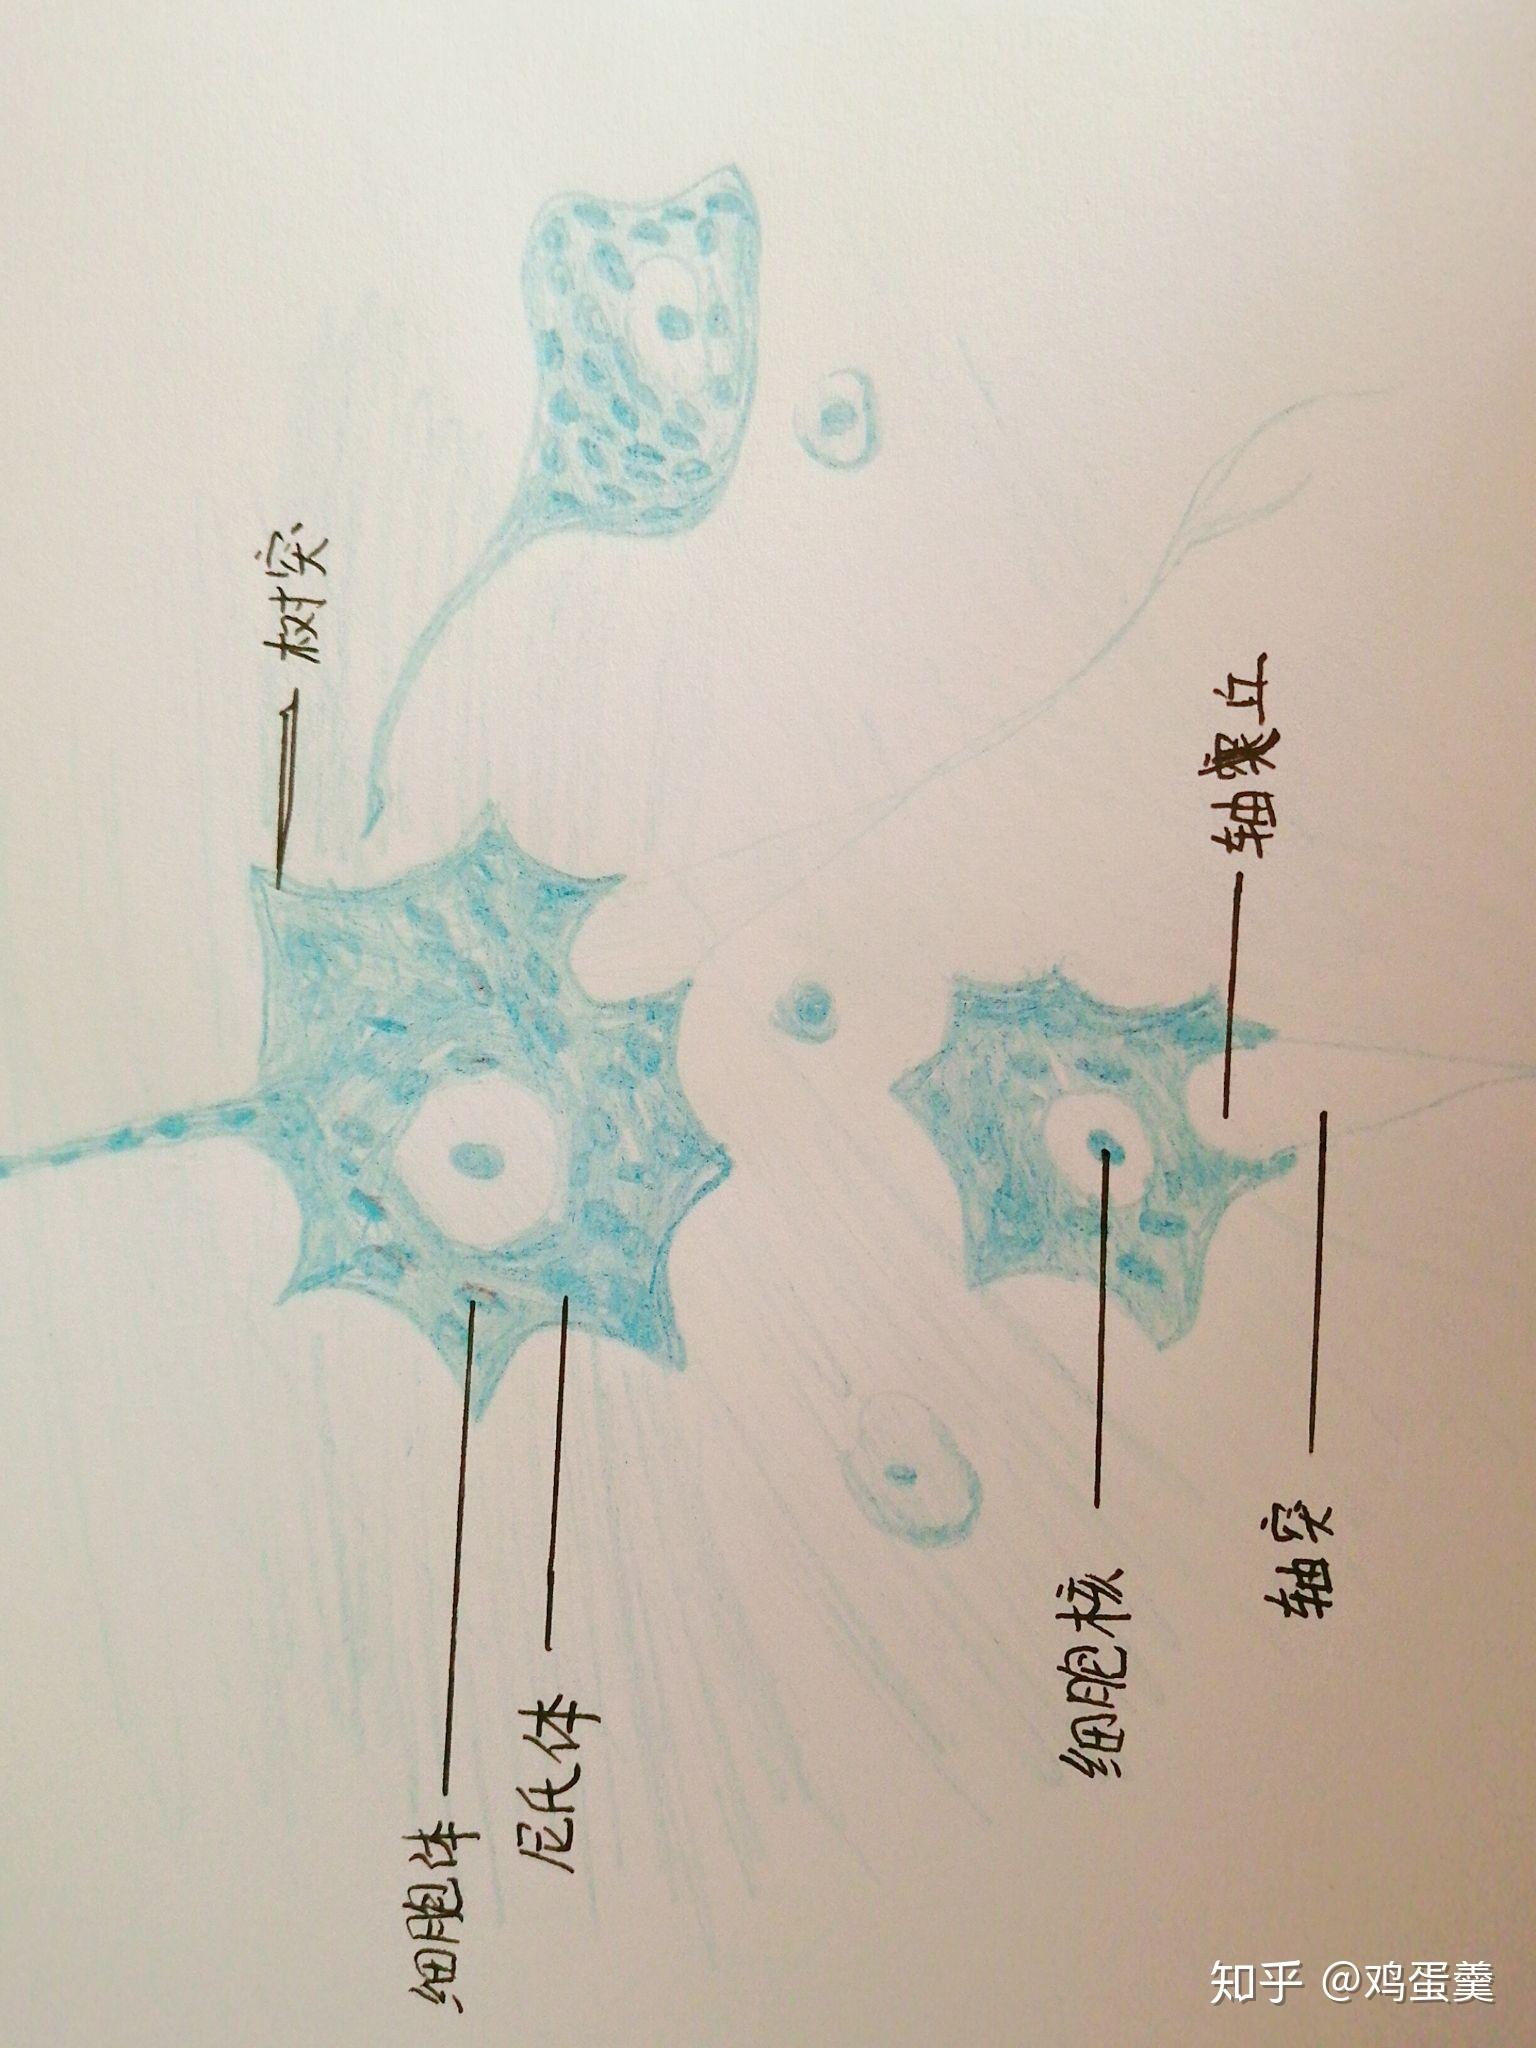 多极神经元细胞手绘图图片